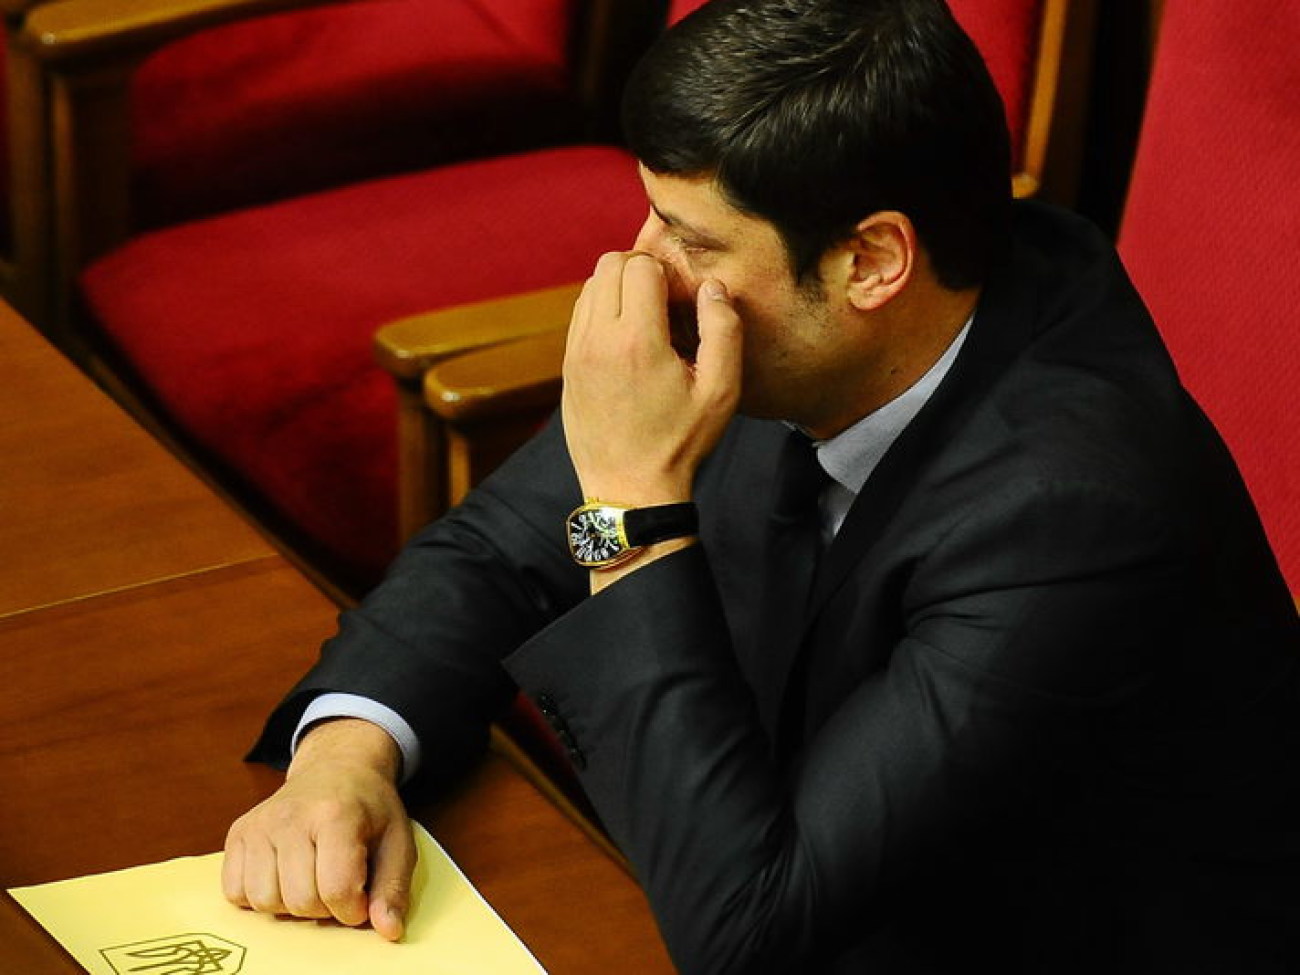 Парламент до сих пор не работает&#8230; новички принимали присягу с гречкой, 15 января 2013г.